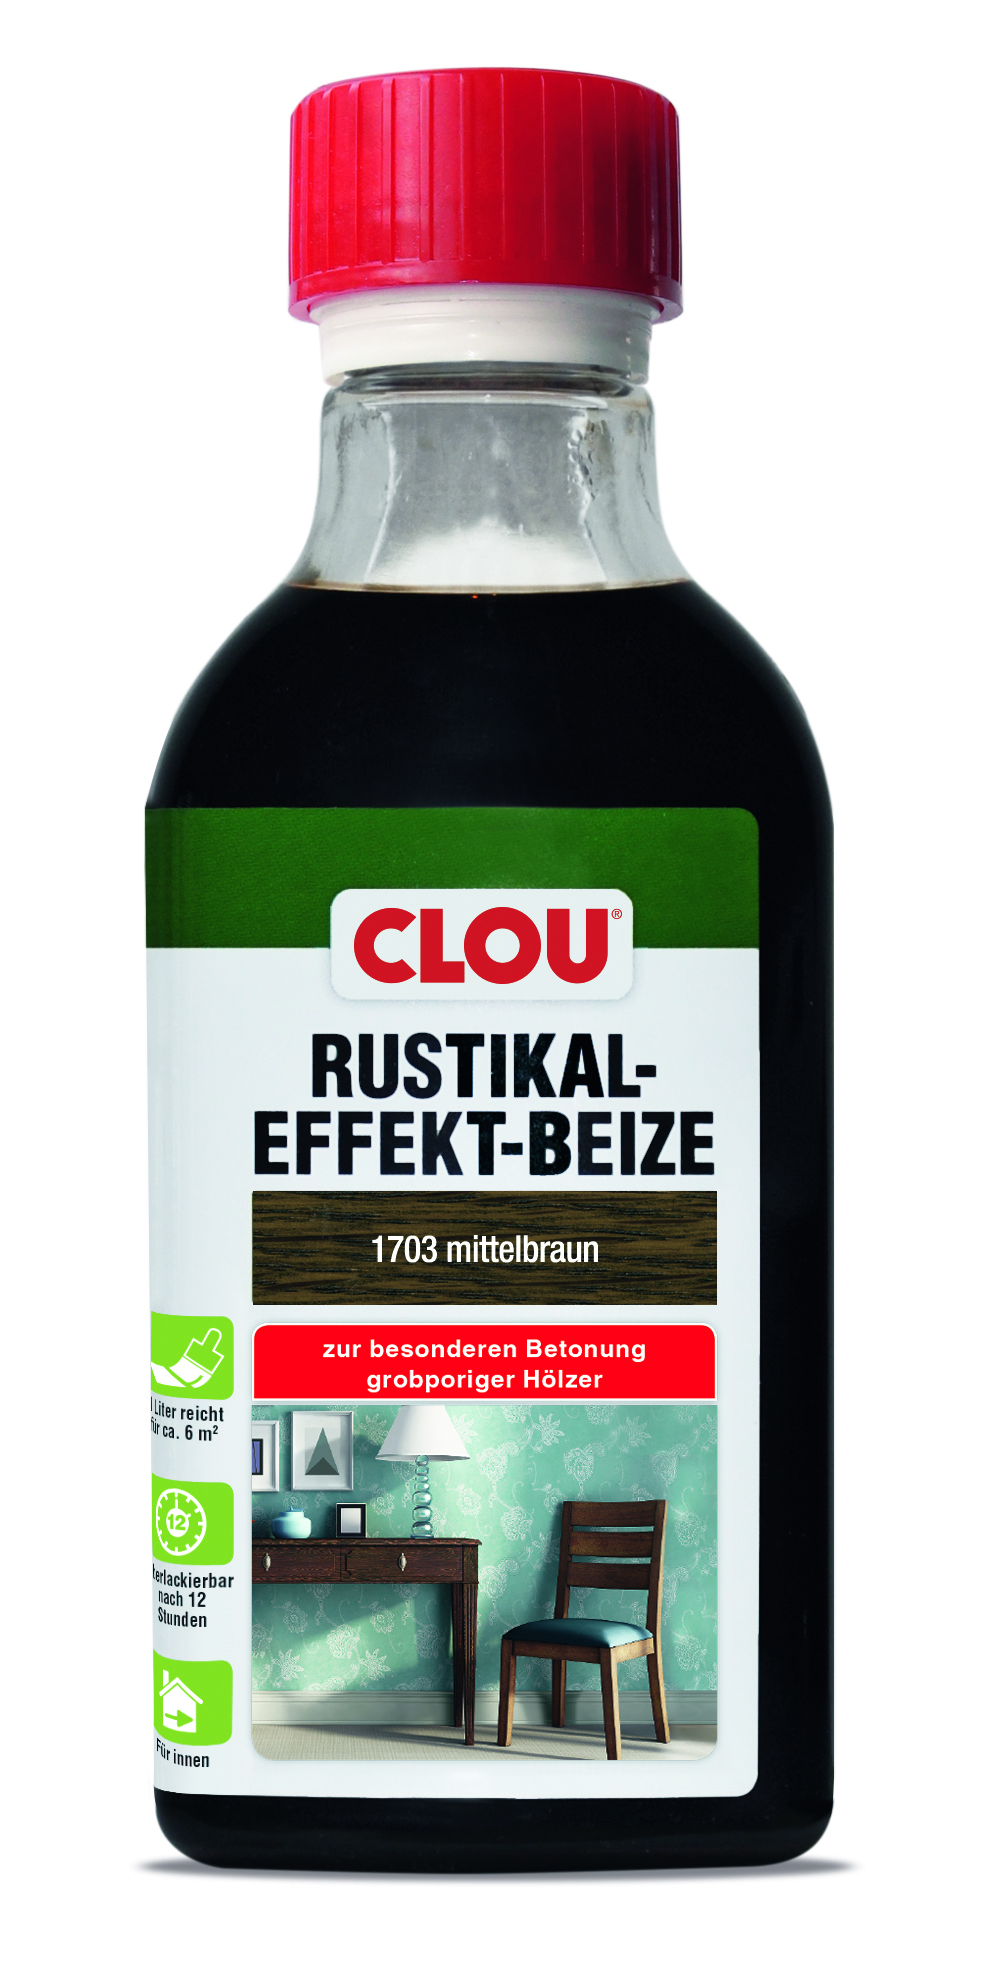 CLOU Rustikal-Effekt-Beize B4, 250 ml - 1703 Mittelbraun